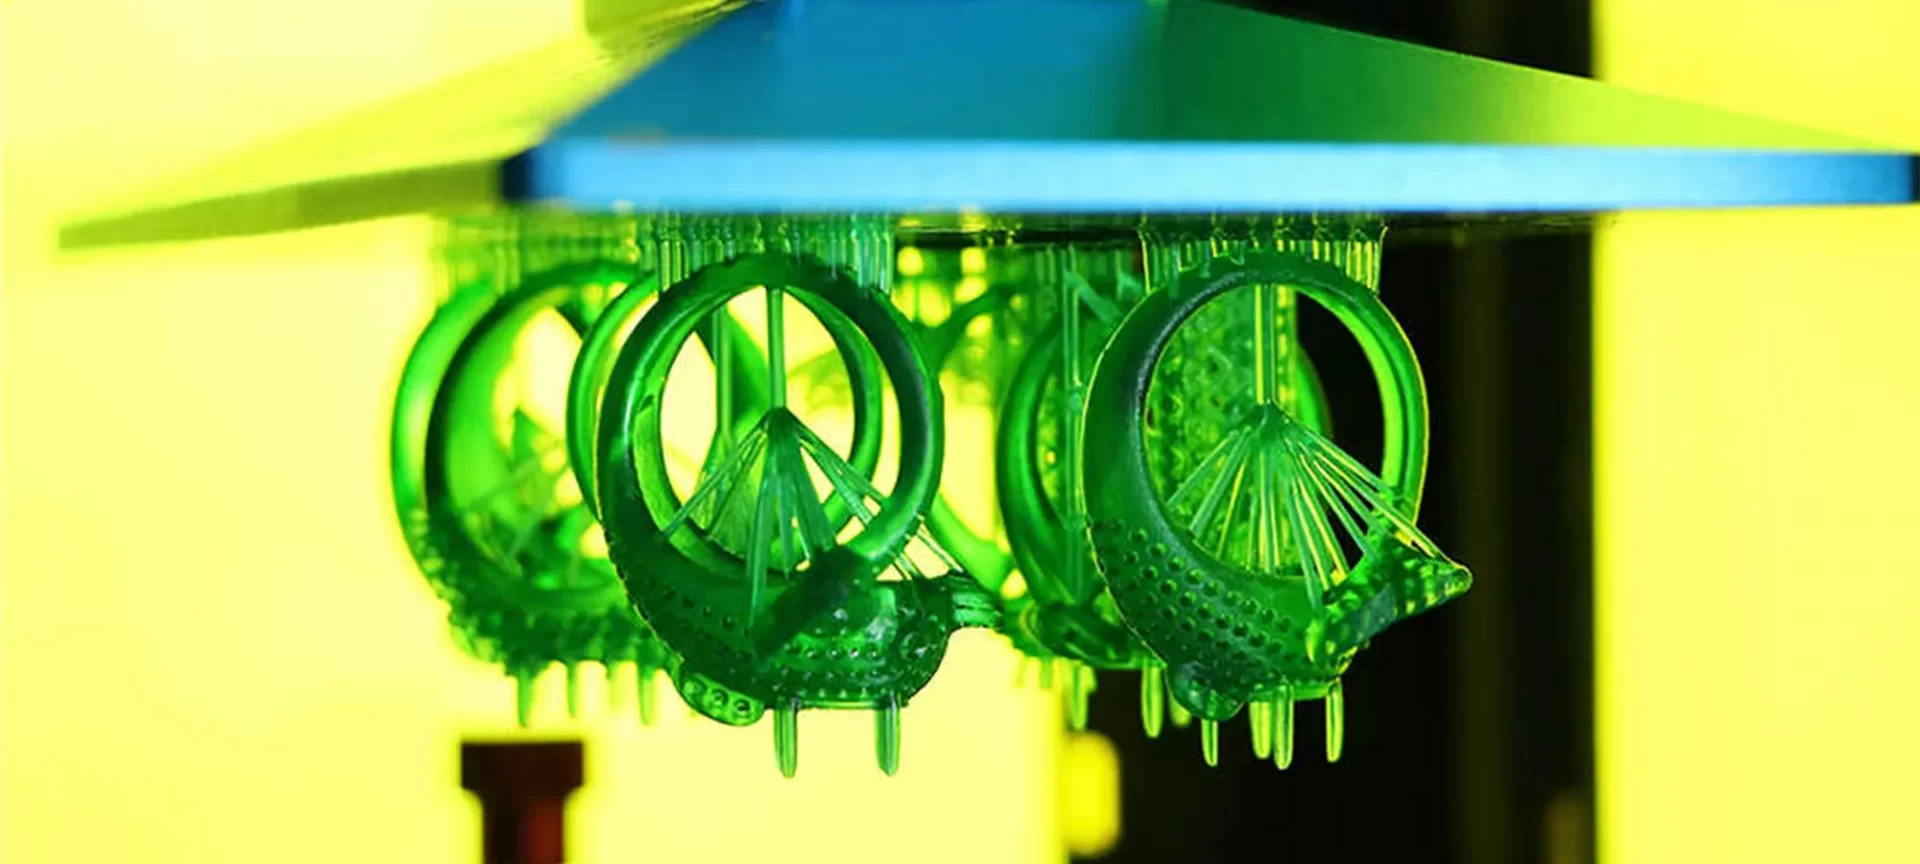 sla 3D printing rings